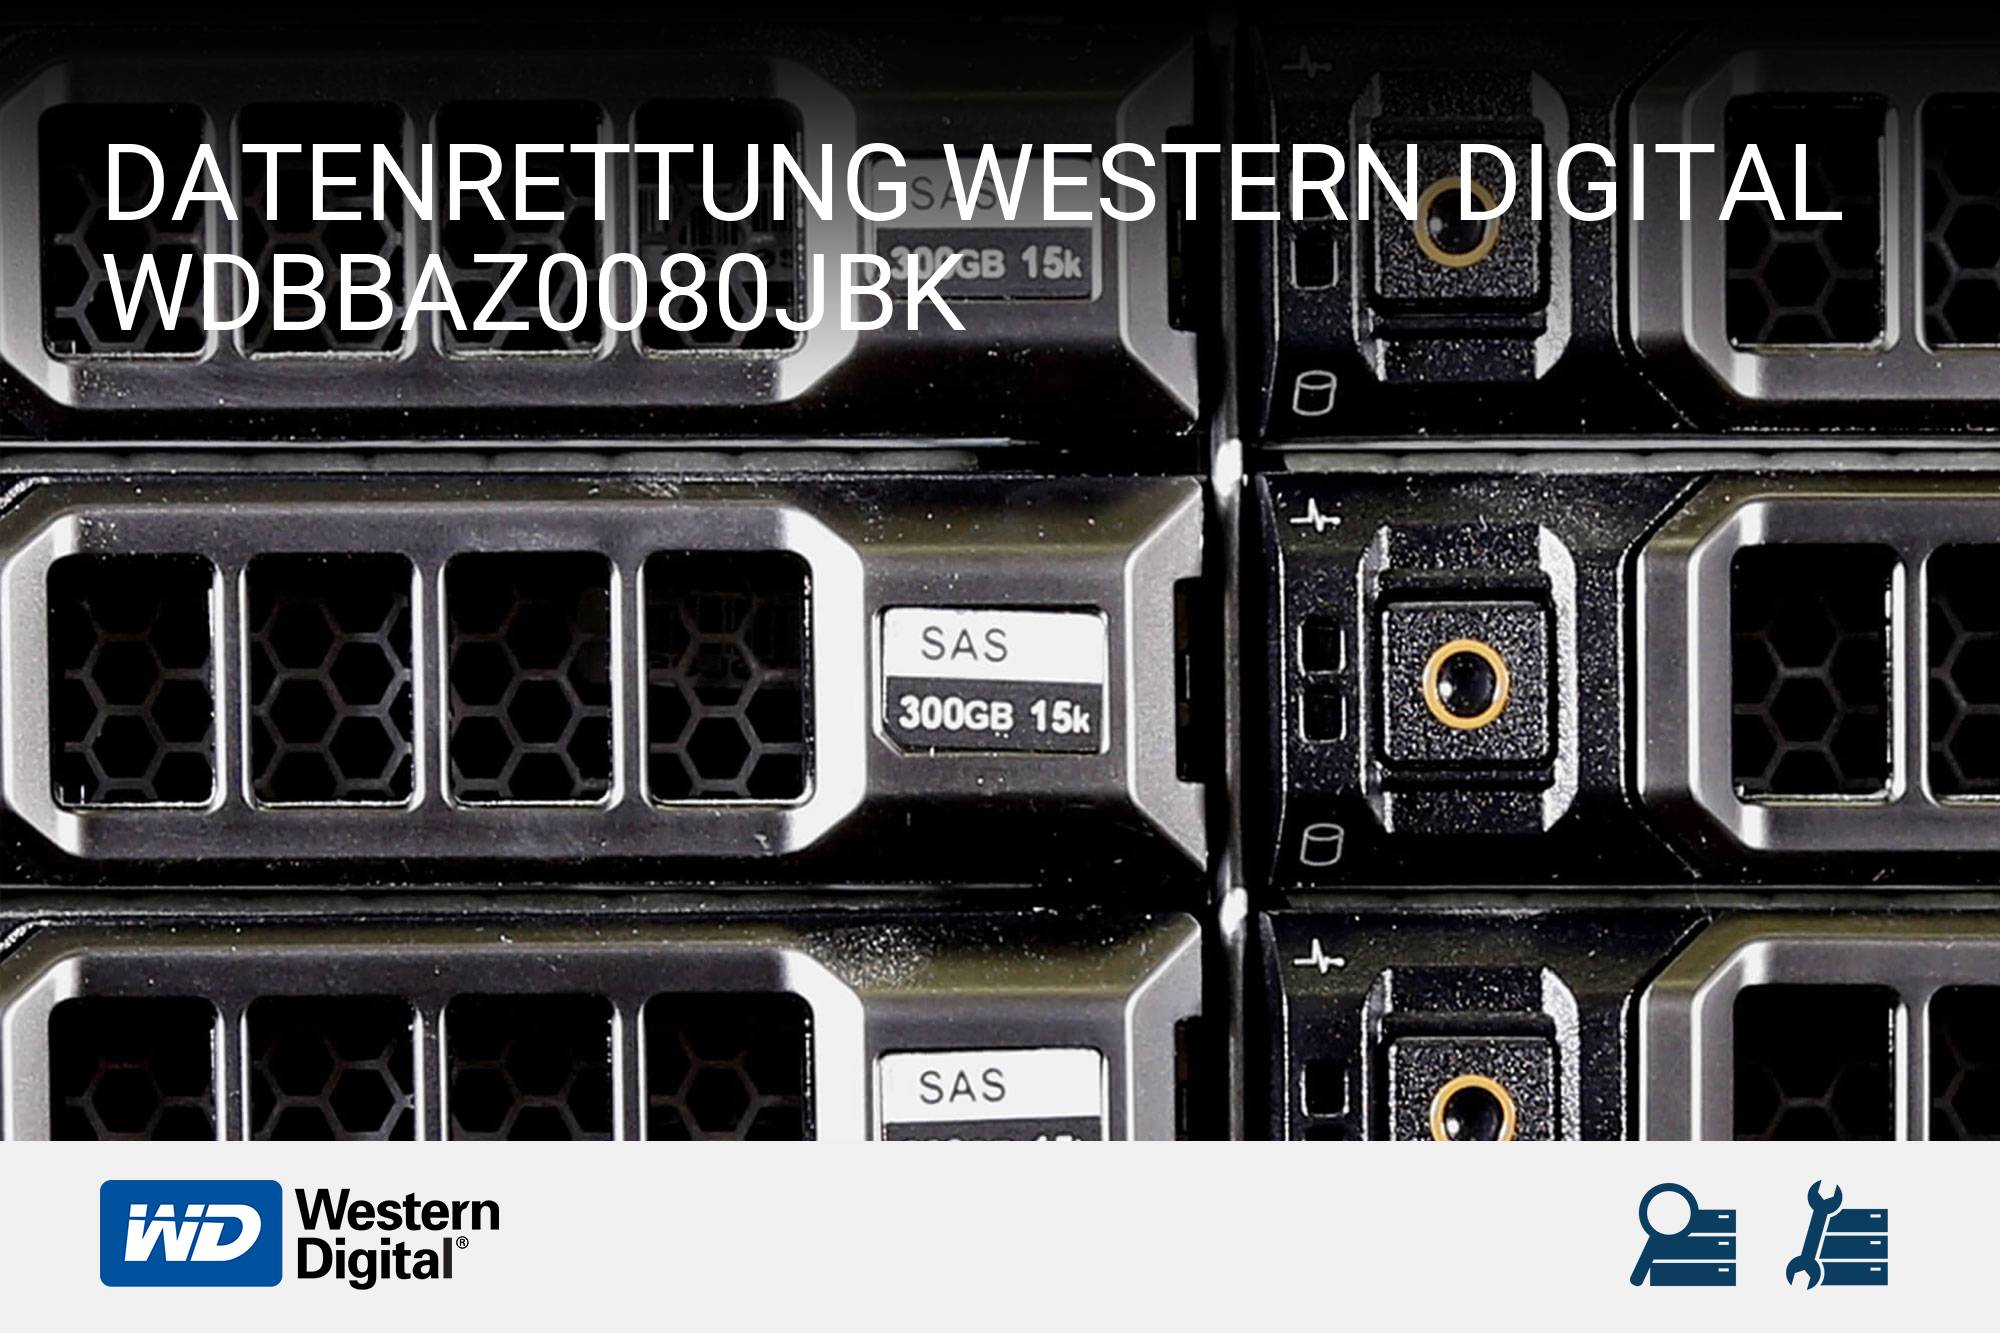 Western Digital WDBBAZ0080JBK